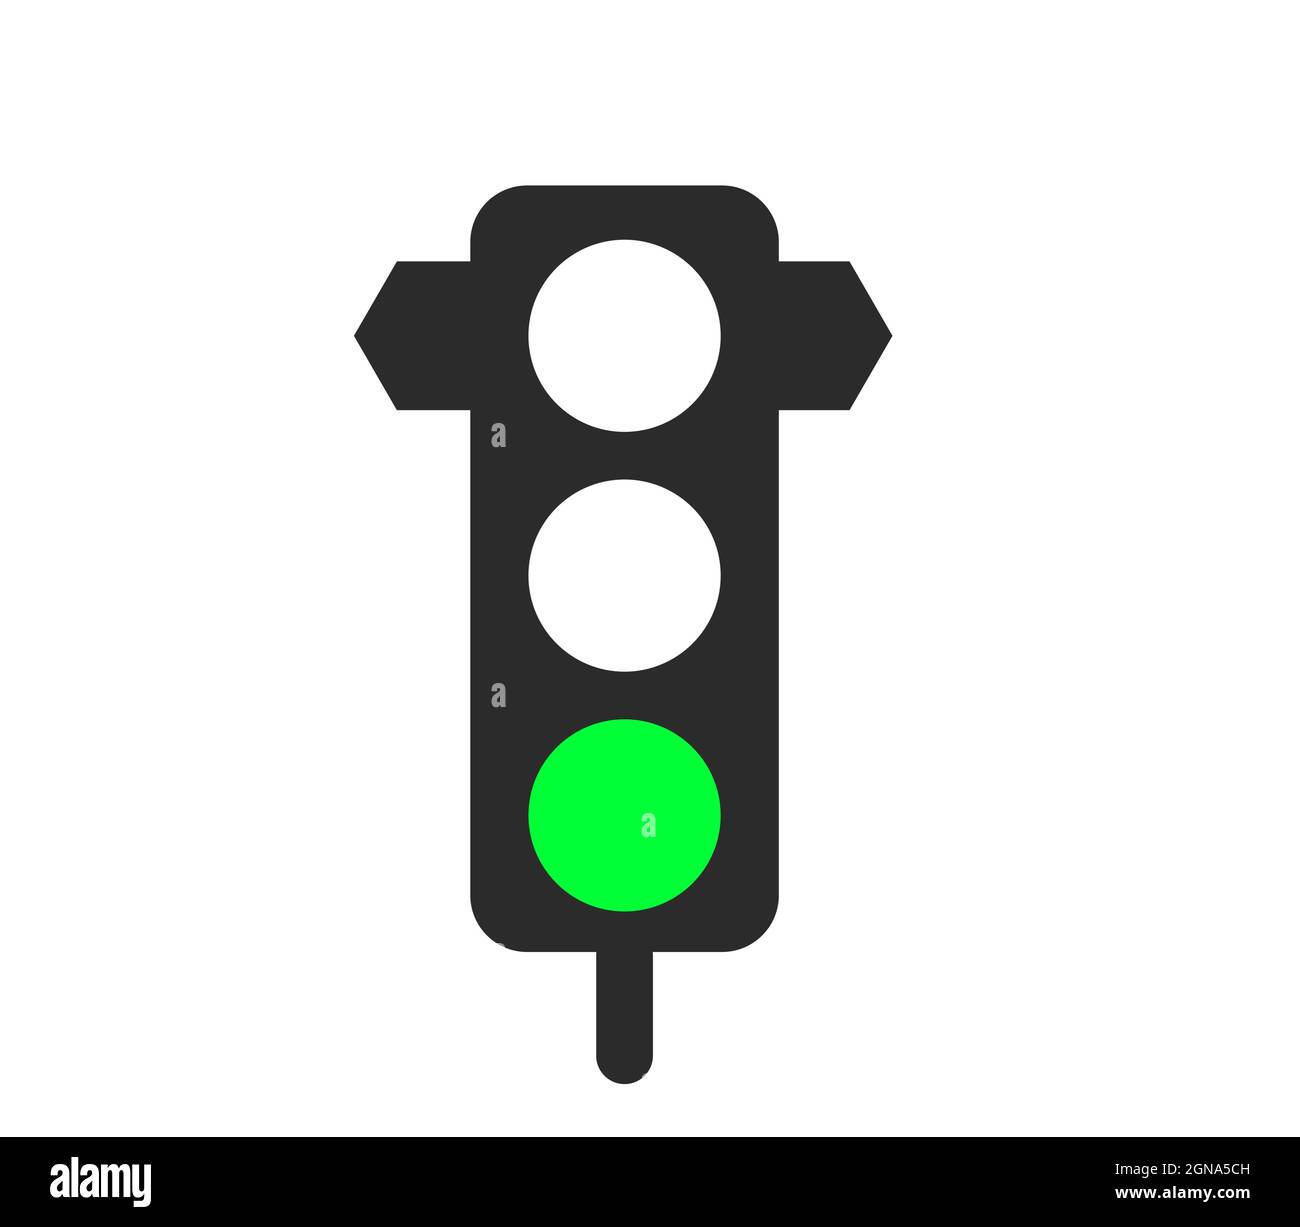 Green Traffic Light Vector Stock Vector